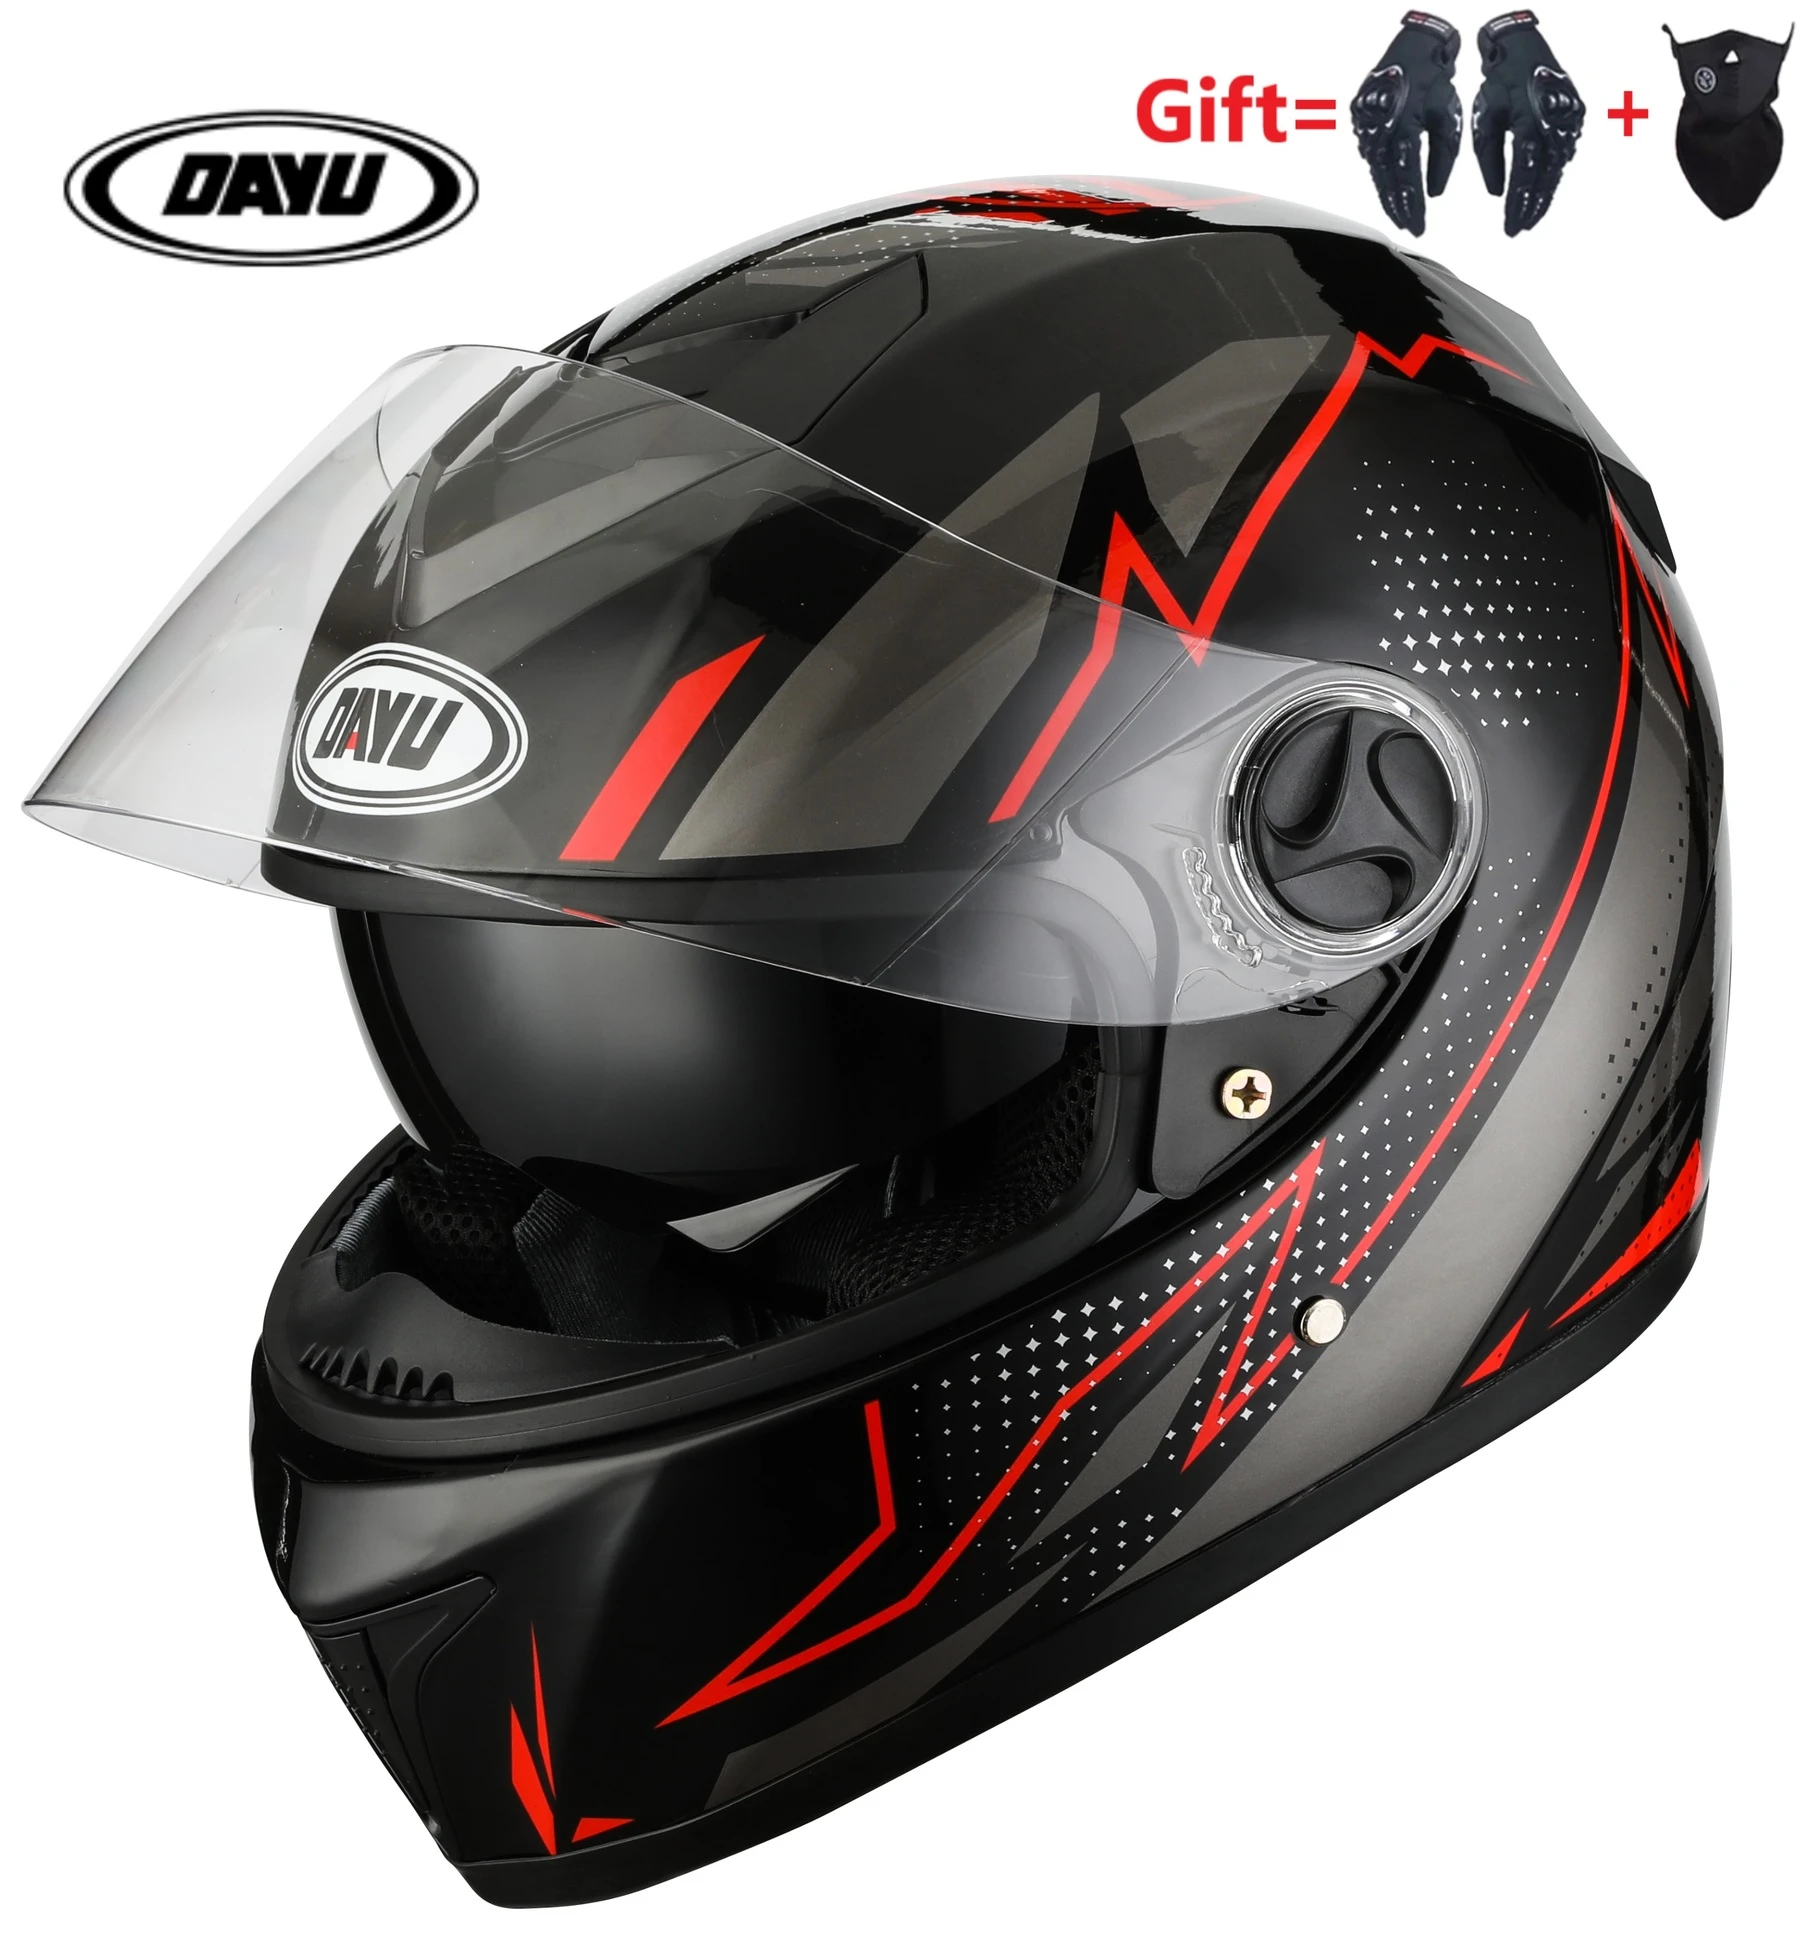 2 Gifts Full Face Motorcycle Helmet Dual Lens Motorbike Helmet Double Visors Dirt Bike Helmets S M L XL For Man women